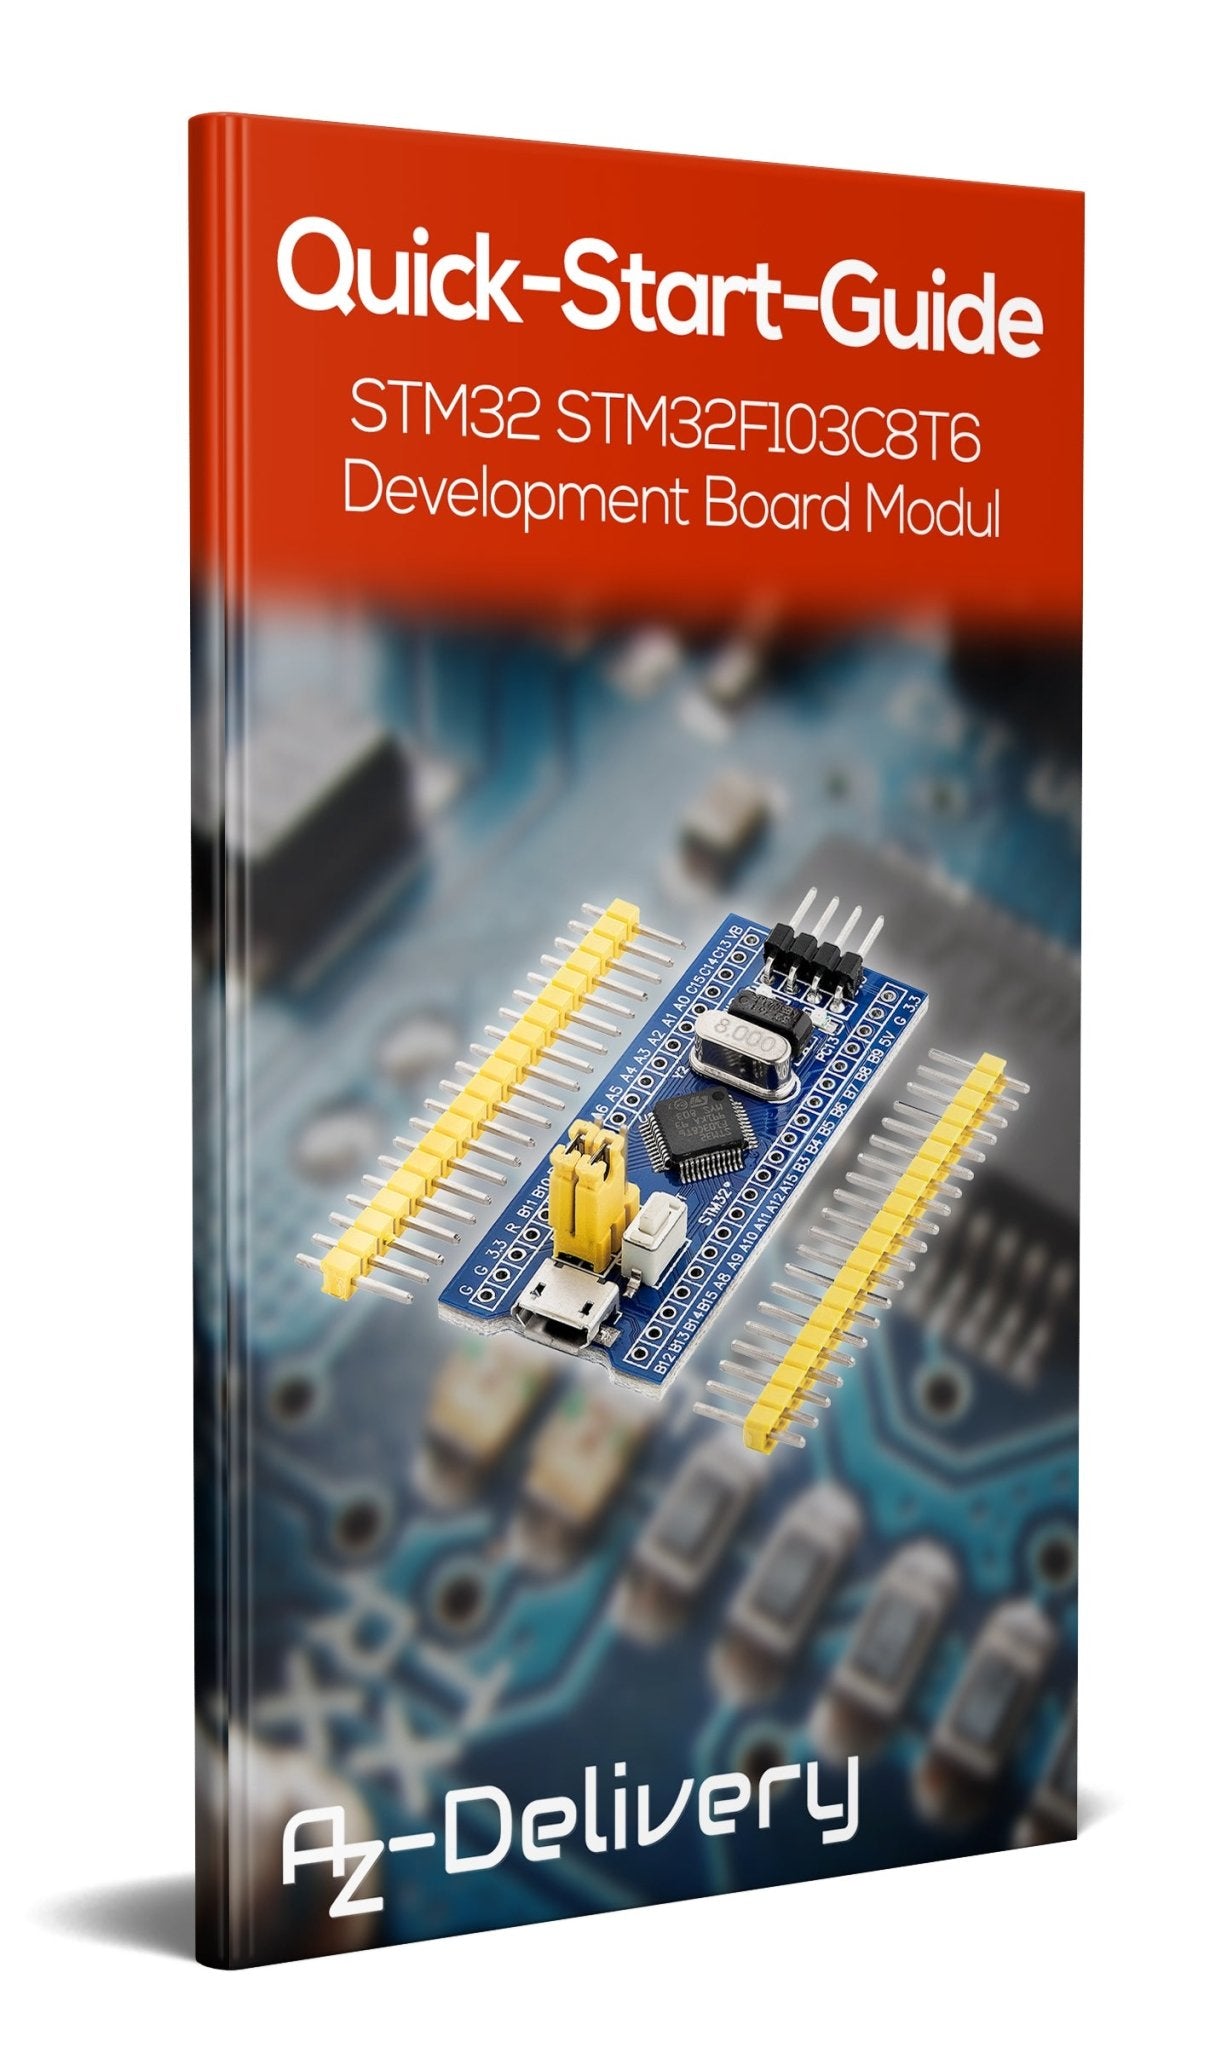 "Bluepill" Development Board Module with ARM Cortex M3 Processor